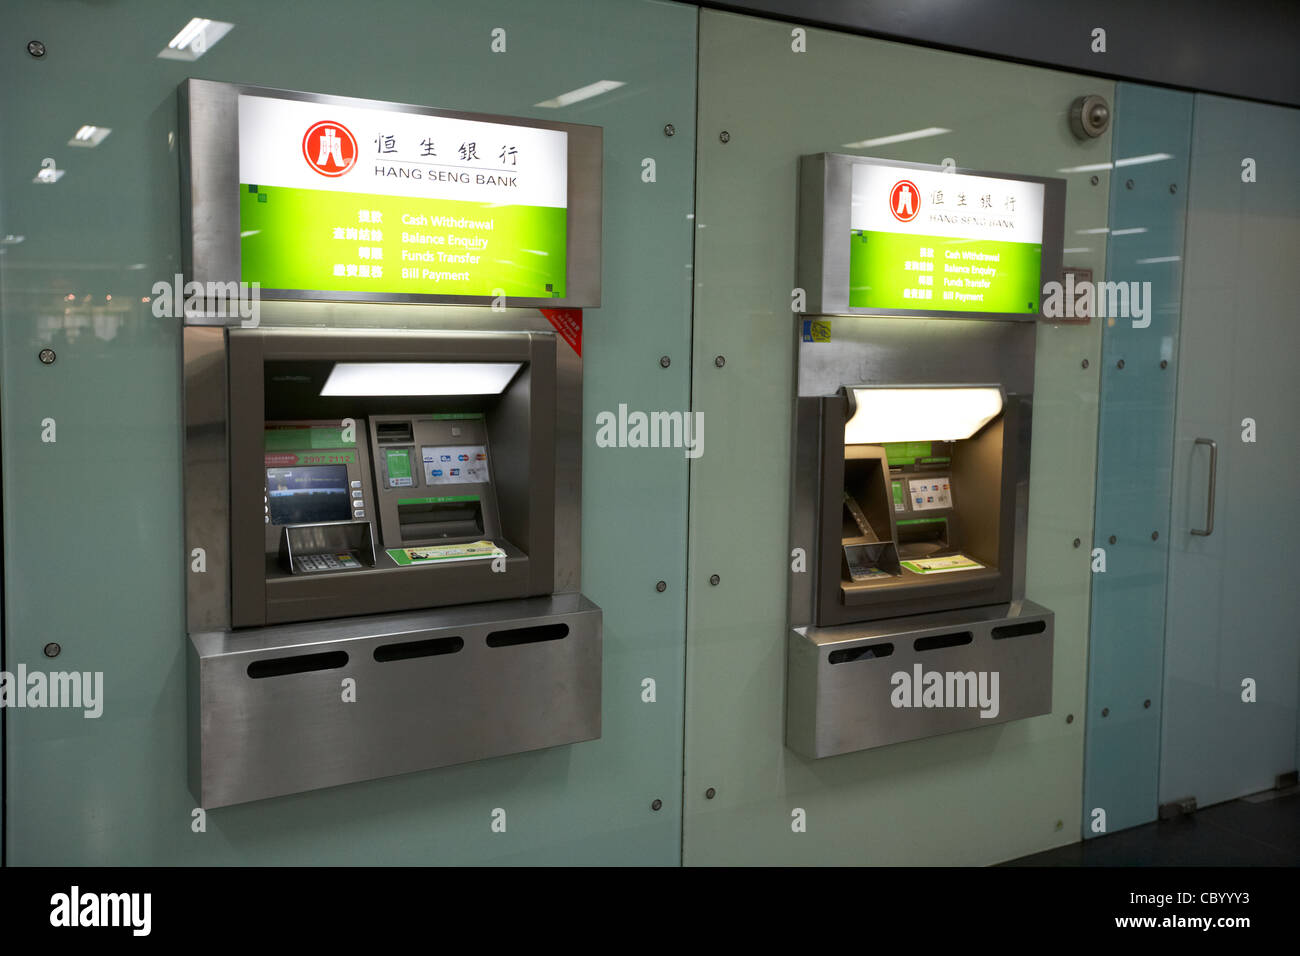 Hang Seng Bank distributeur automatique de guichets automatiques bancaires à Hong Kong Hong Kong Chine Asie Banque D'Images